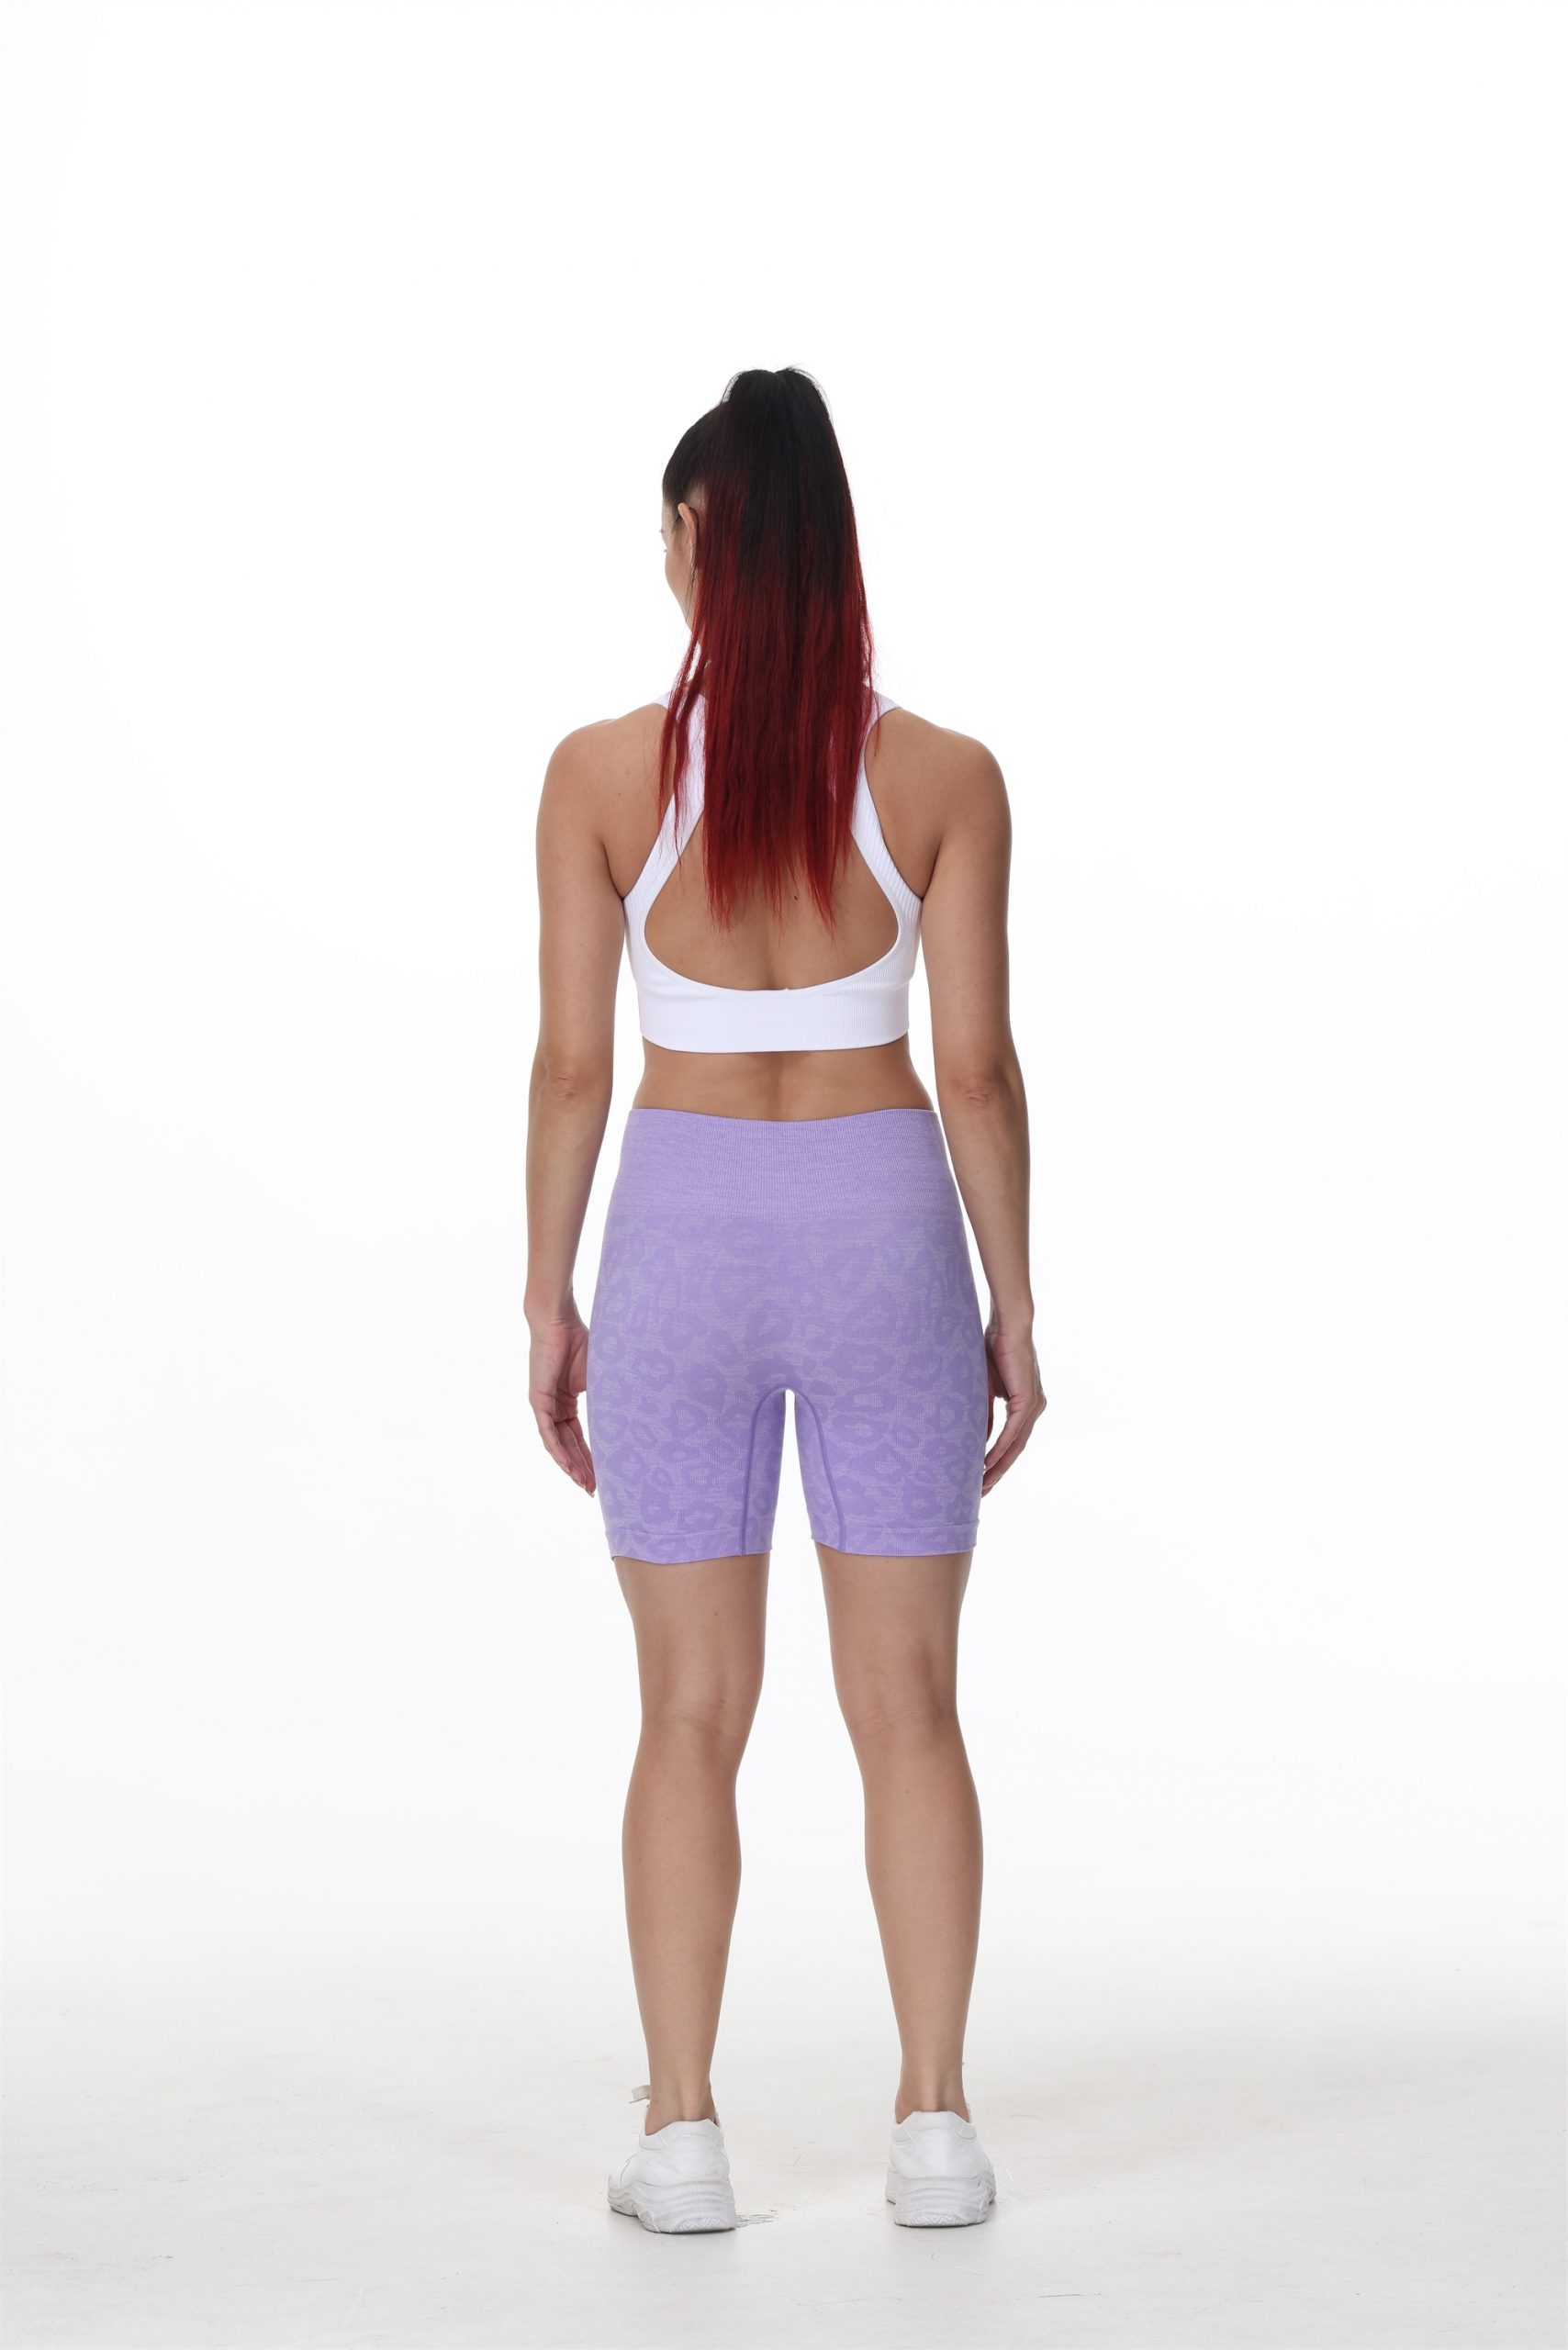 Summer Leopard Print Shorts Fitness Seamless Scrunch Butt Women Running Yoga Shorts High Waist GYM Shorts Bicker Sport Shorts